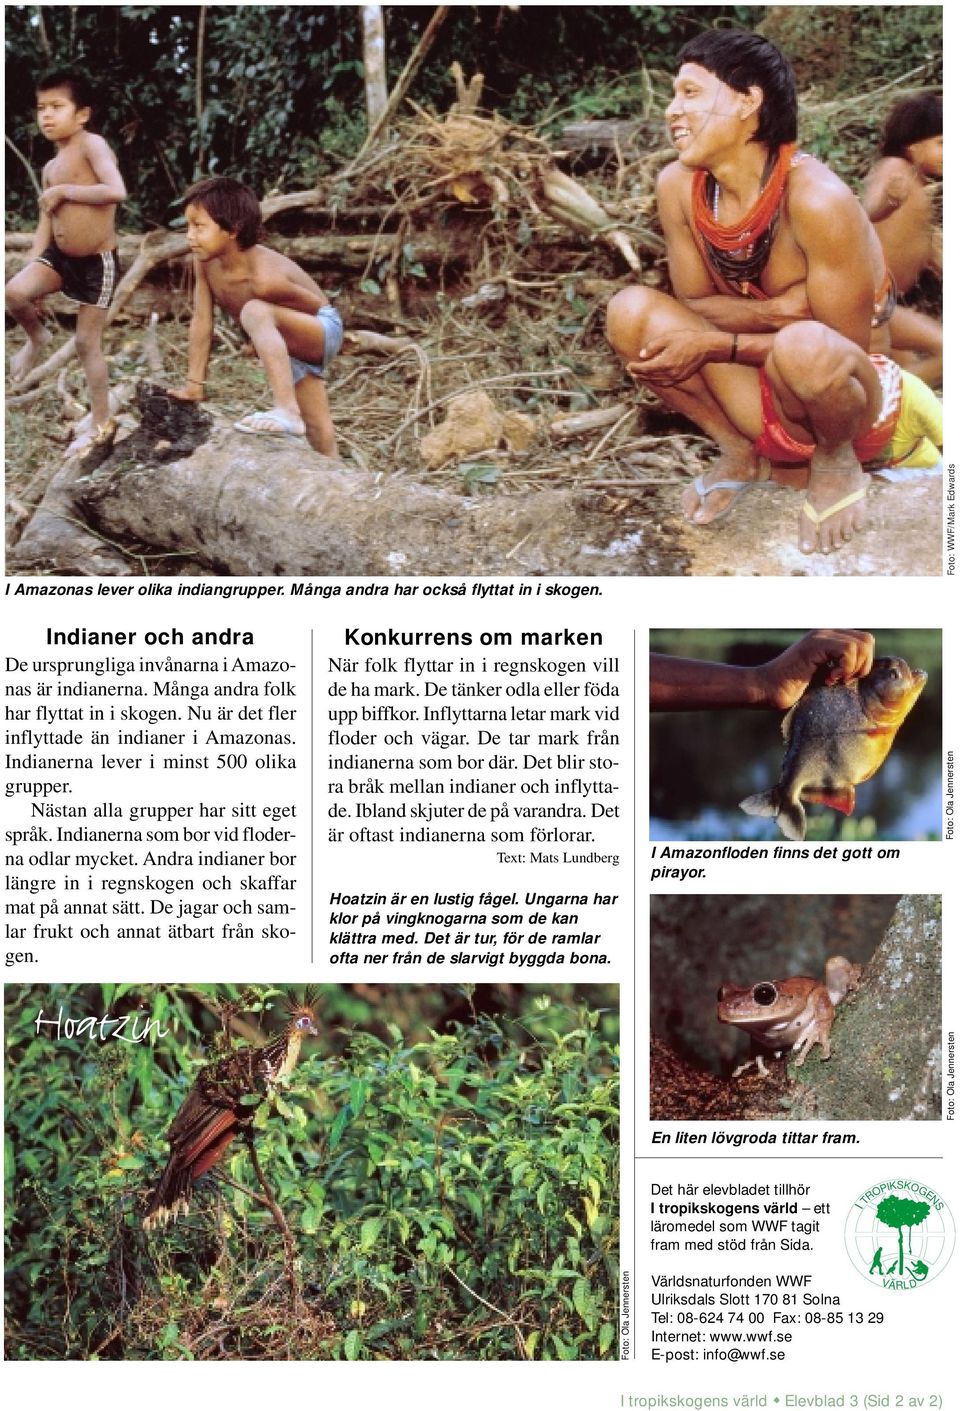 Andra indianer bor längre in i regnskogen och skaffar mat på annat sätt. De jagar och samlar frukt och annat ätbart från skogen.